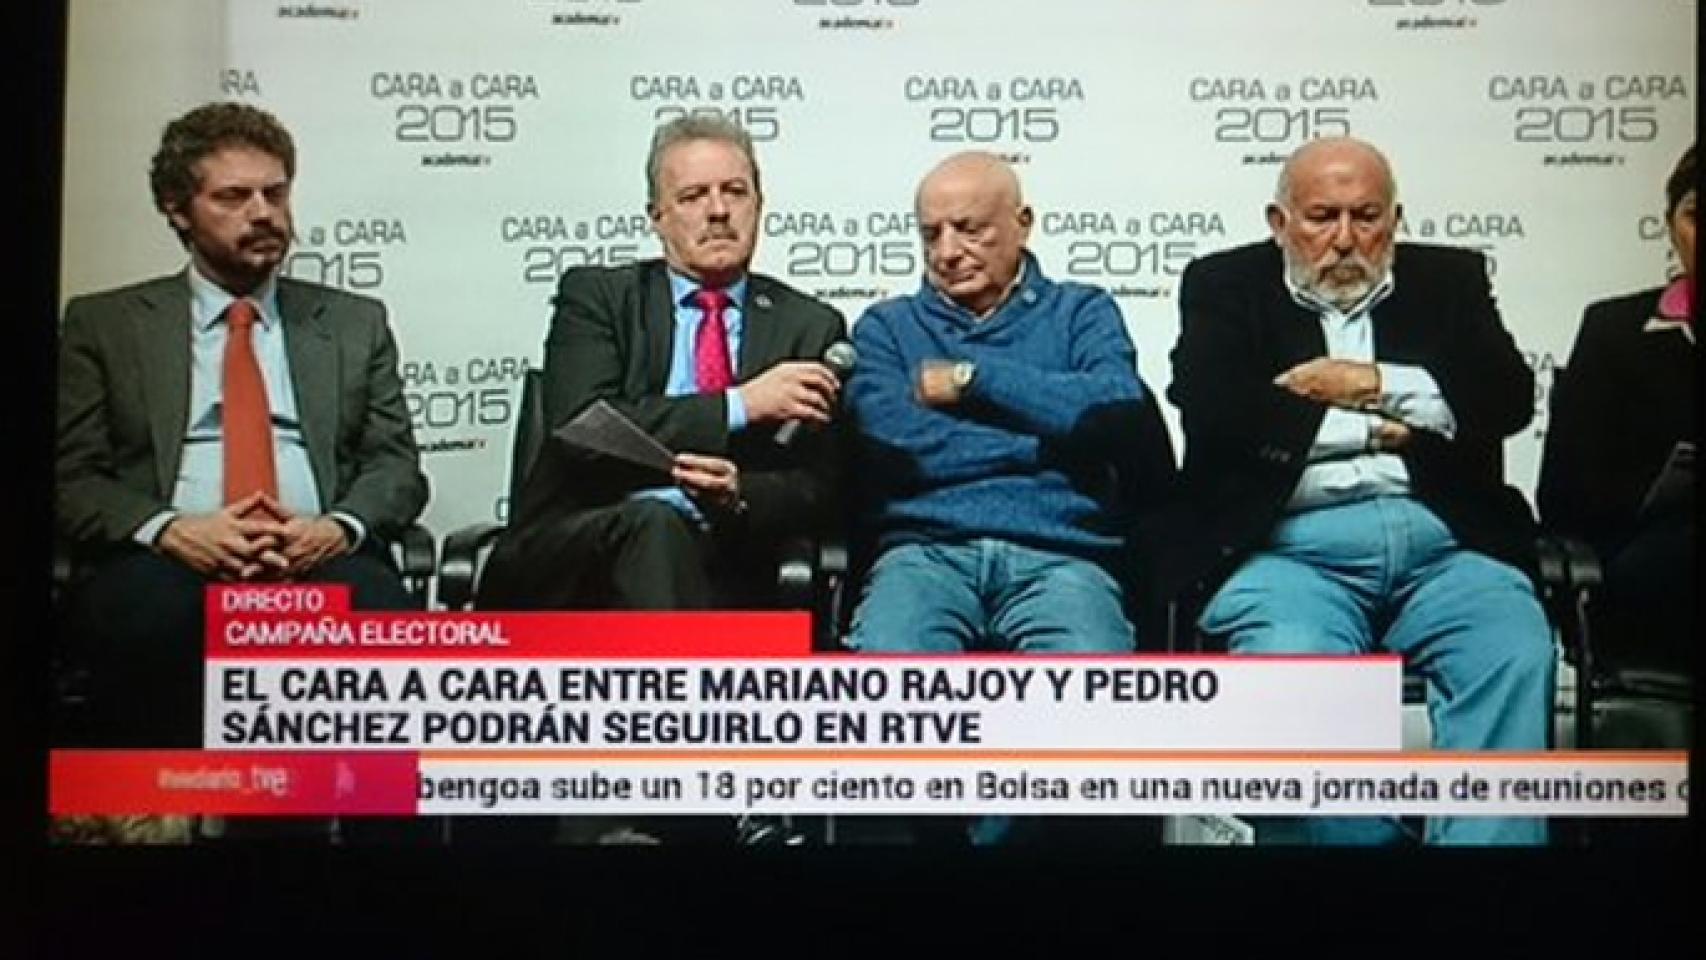 Captura de la presentación del debate de la Academia emitida por Canal 24 horas  (Imagen: @carlorol)